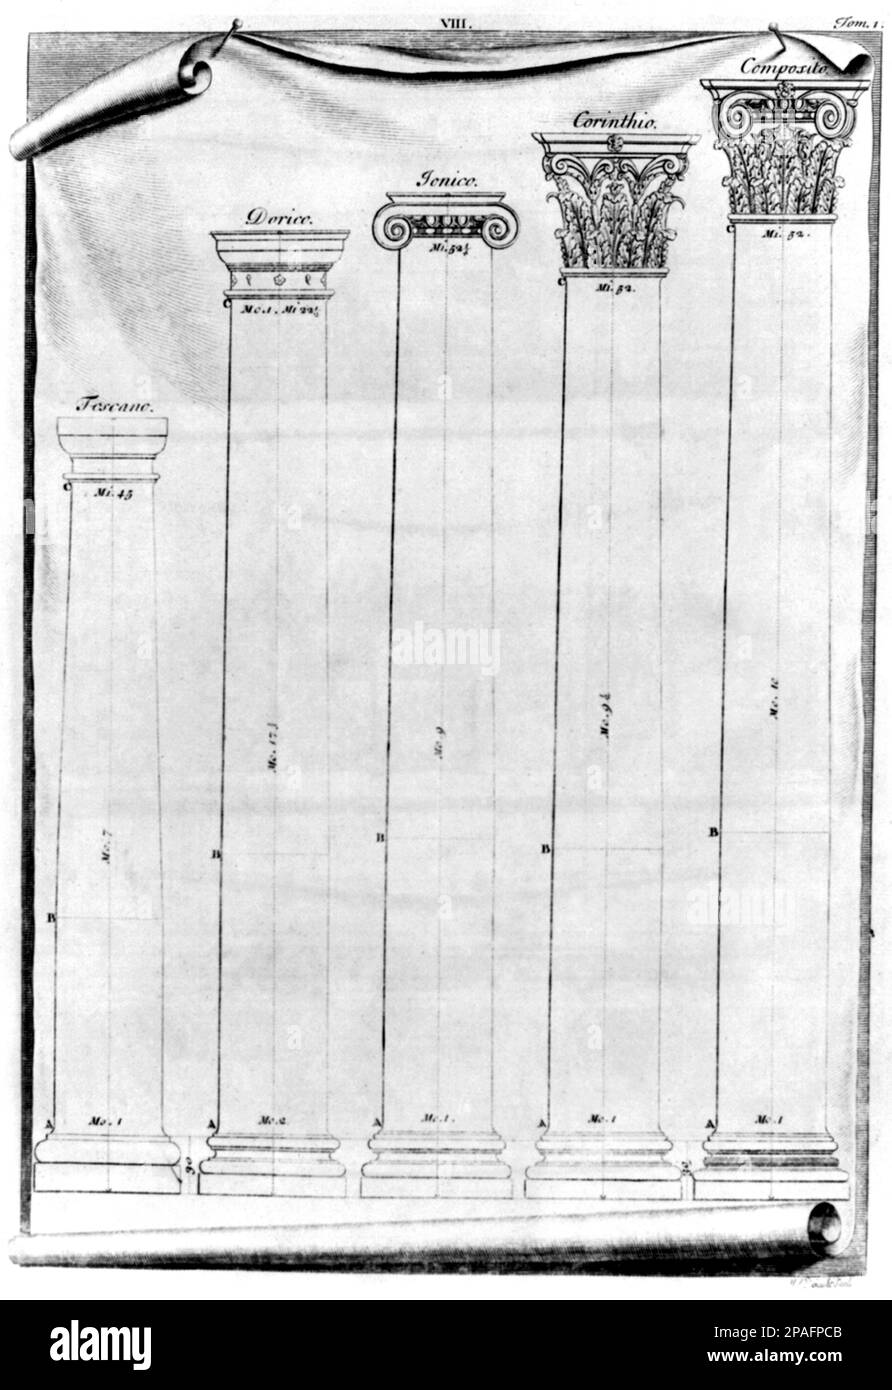 1742 , London , GROSSBRITANNIEN : Beispiele für 5 Arten klassischer Säulen Toskana, Doric, Ionische, korinthische und Komposita für die vier Architekturbücher, Plate VIII ( i QUATTRO LIBRI DELL' ARCHITETTURA ) der italienischen Architektin ANDREA PALLADIO (geboren Andrea di Pietro della Gondola , 1508 - 1580 ) . Palladio gilt weithin als die einflussreichste Person in der Geschichte der westlichen Architektur . - DORICO - JONICO - IONICO - CORINZIO - COMPOSITO - TOSCANO - RENAISSANCE - RINASCIMENTO - ARTE - ARCHITETTO - ARCHITETTURA - ARCHITEKTUR - KUNST - LIBRO - BUCH - BIBLIOFILIA - KUNST - GRAVUR - Stockfoto